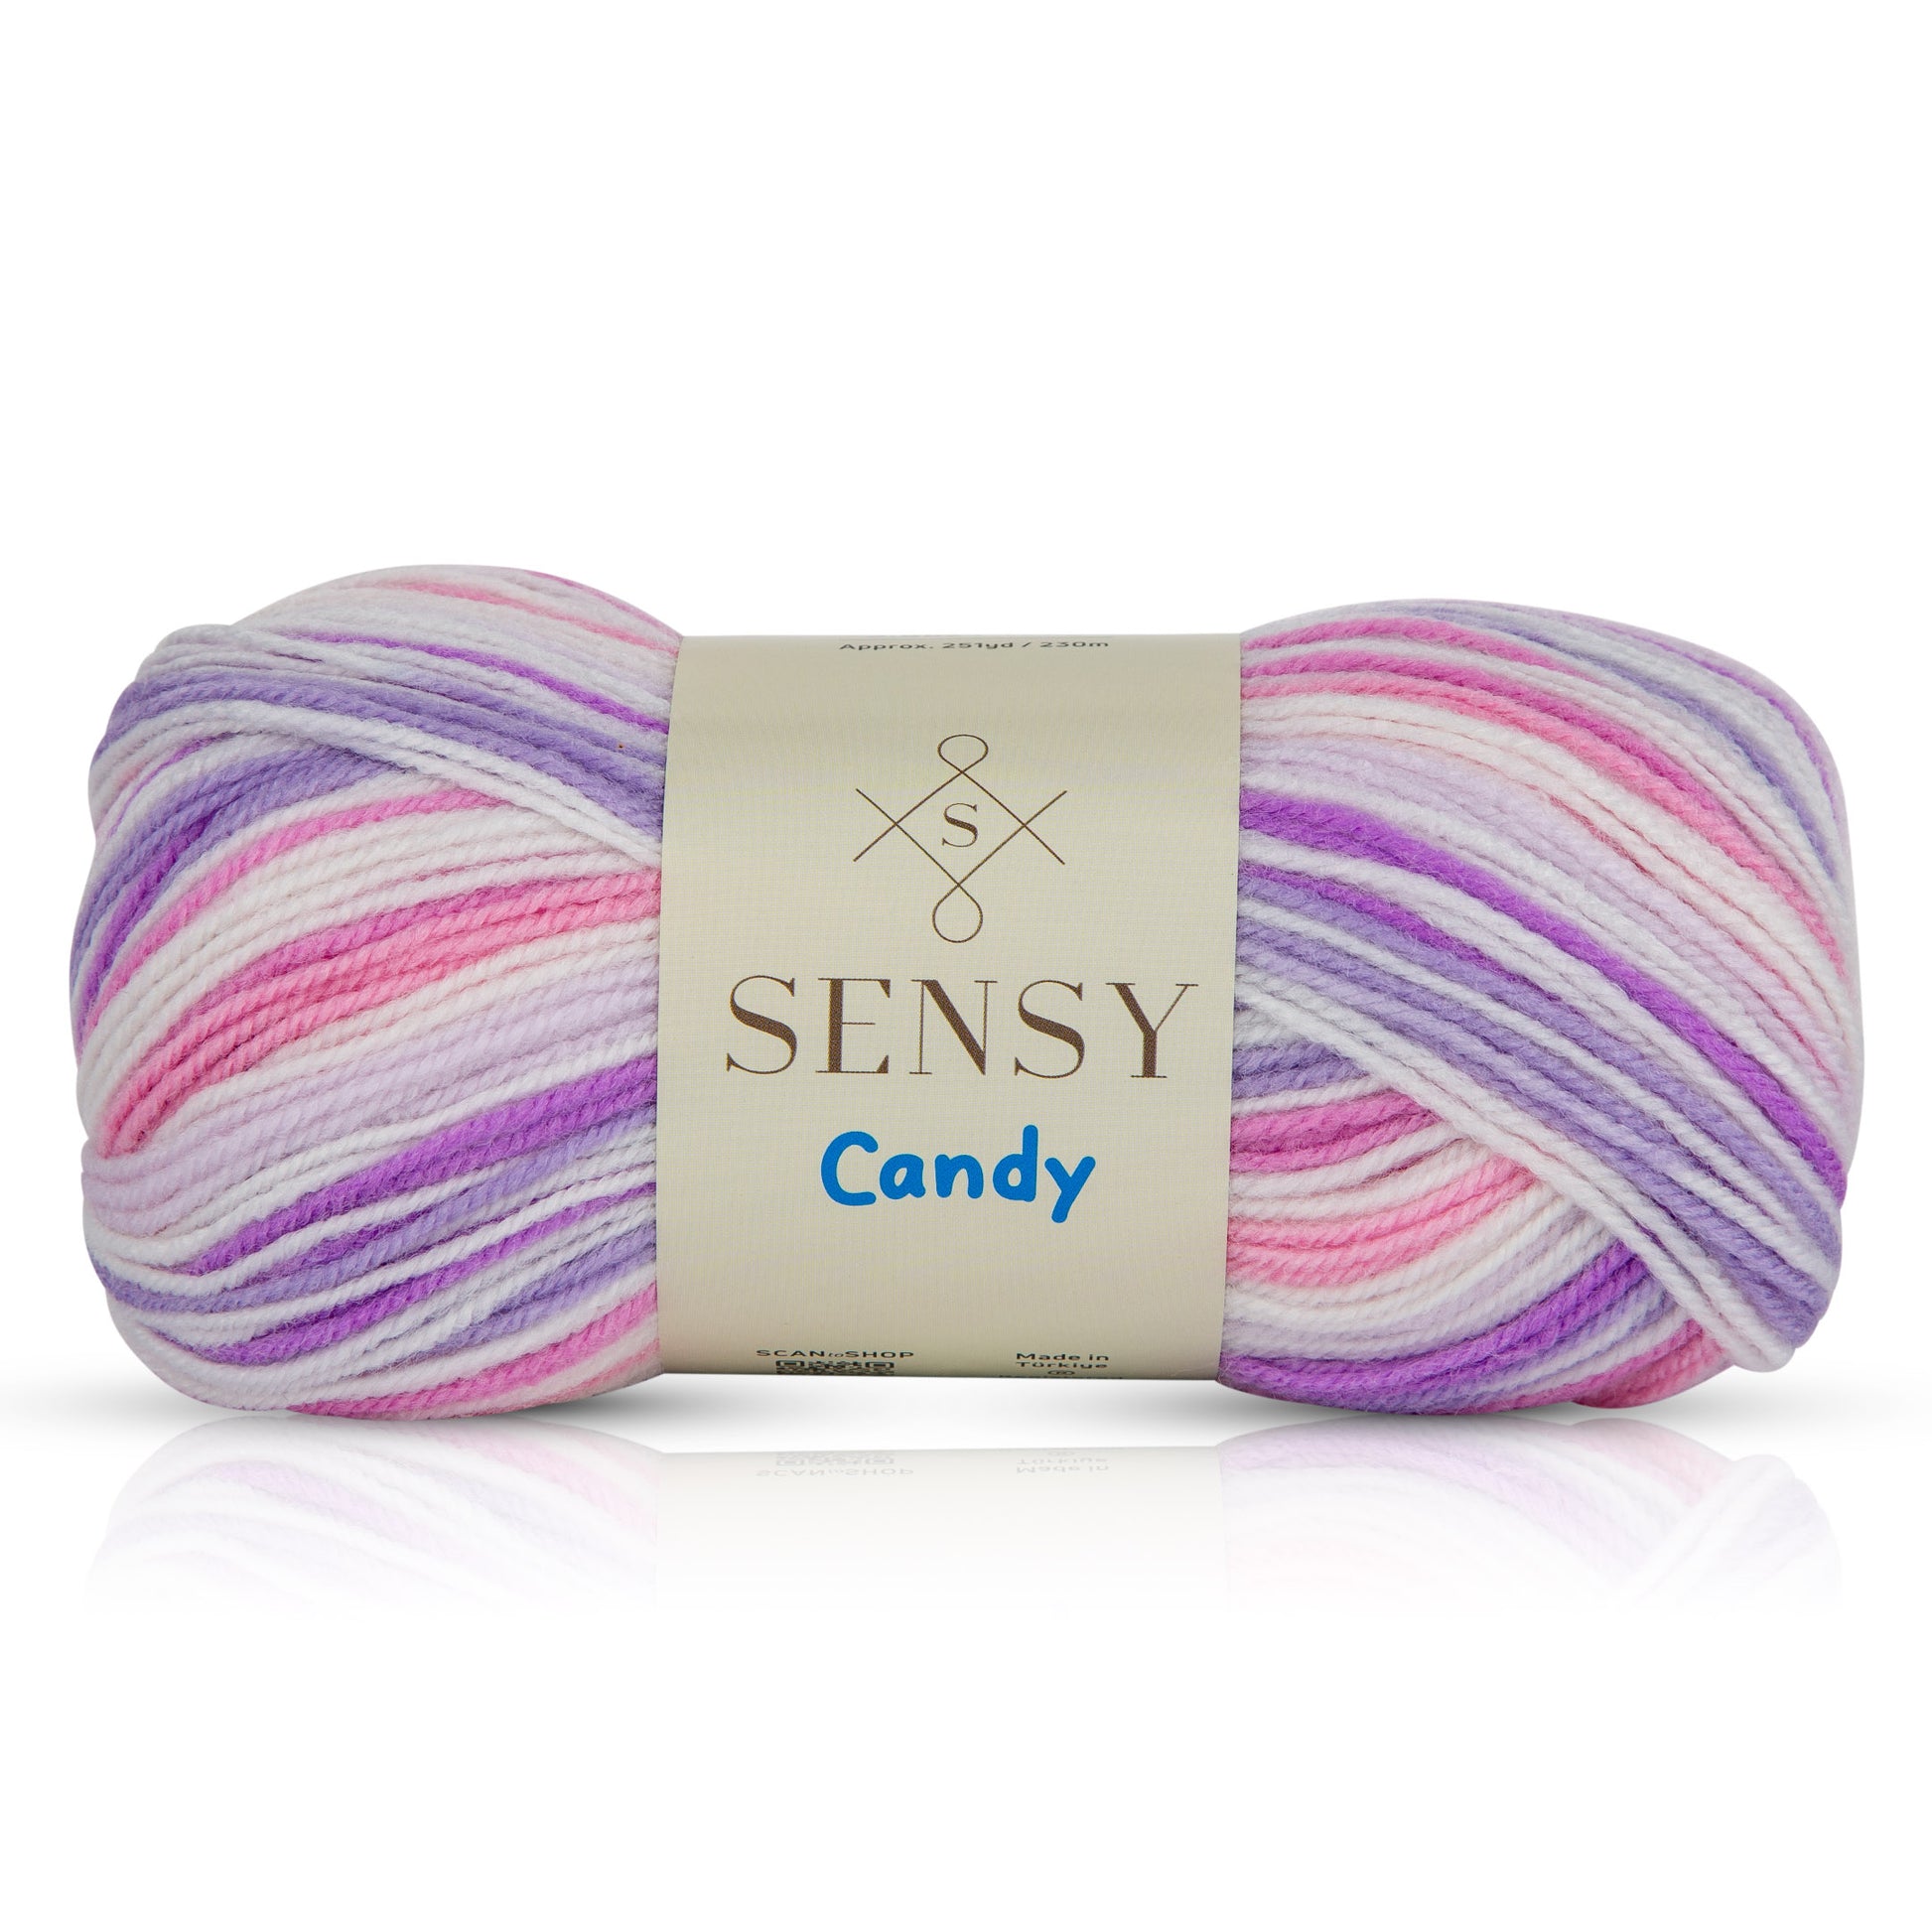  oAutoSjy Colorful Knitting Yarn Crochet Yarn Medium